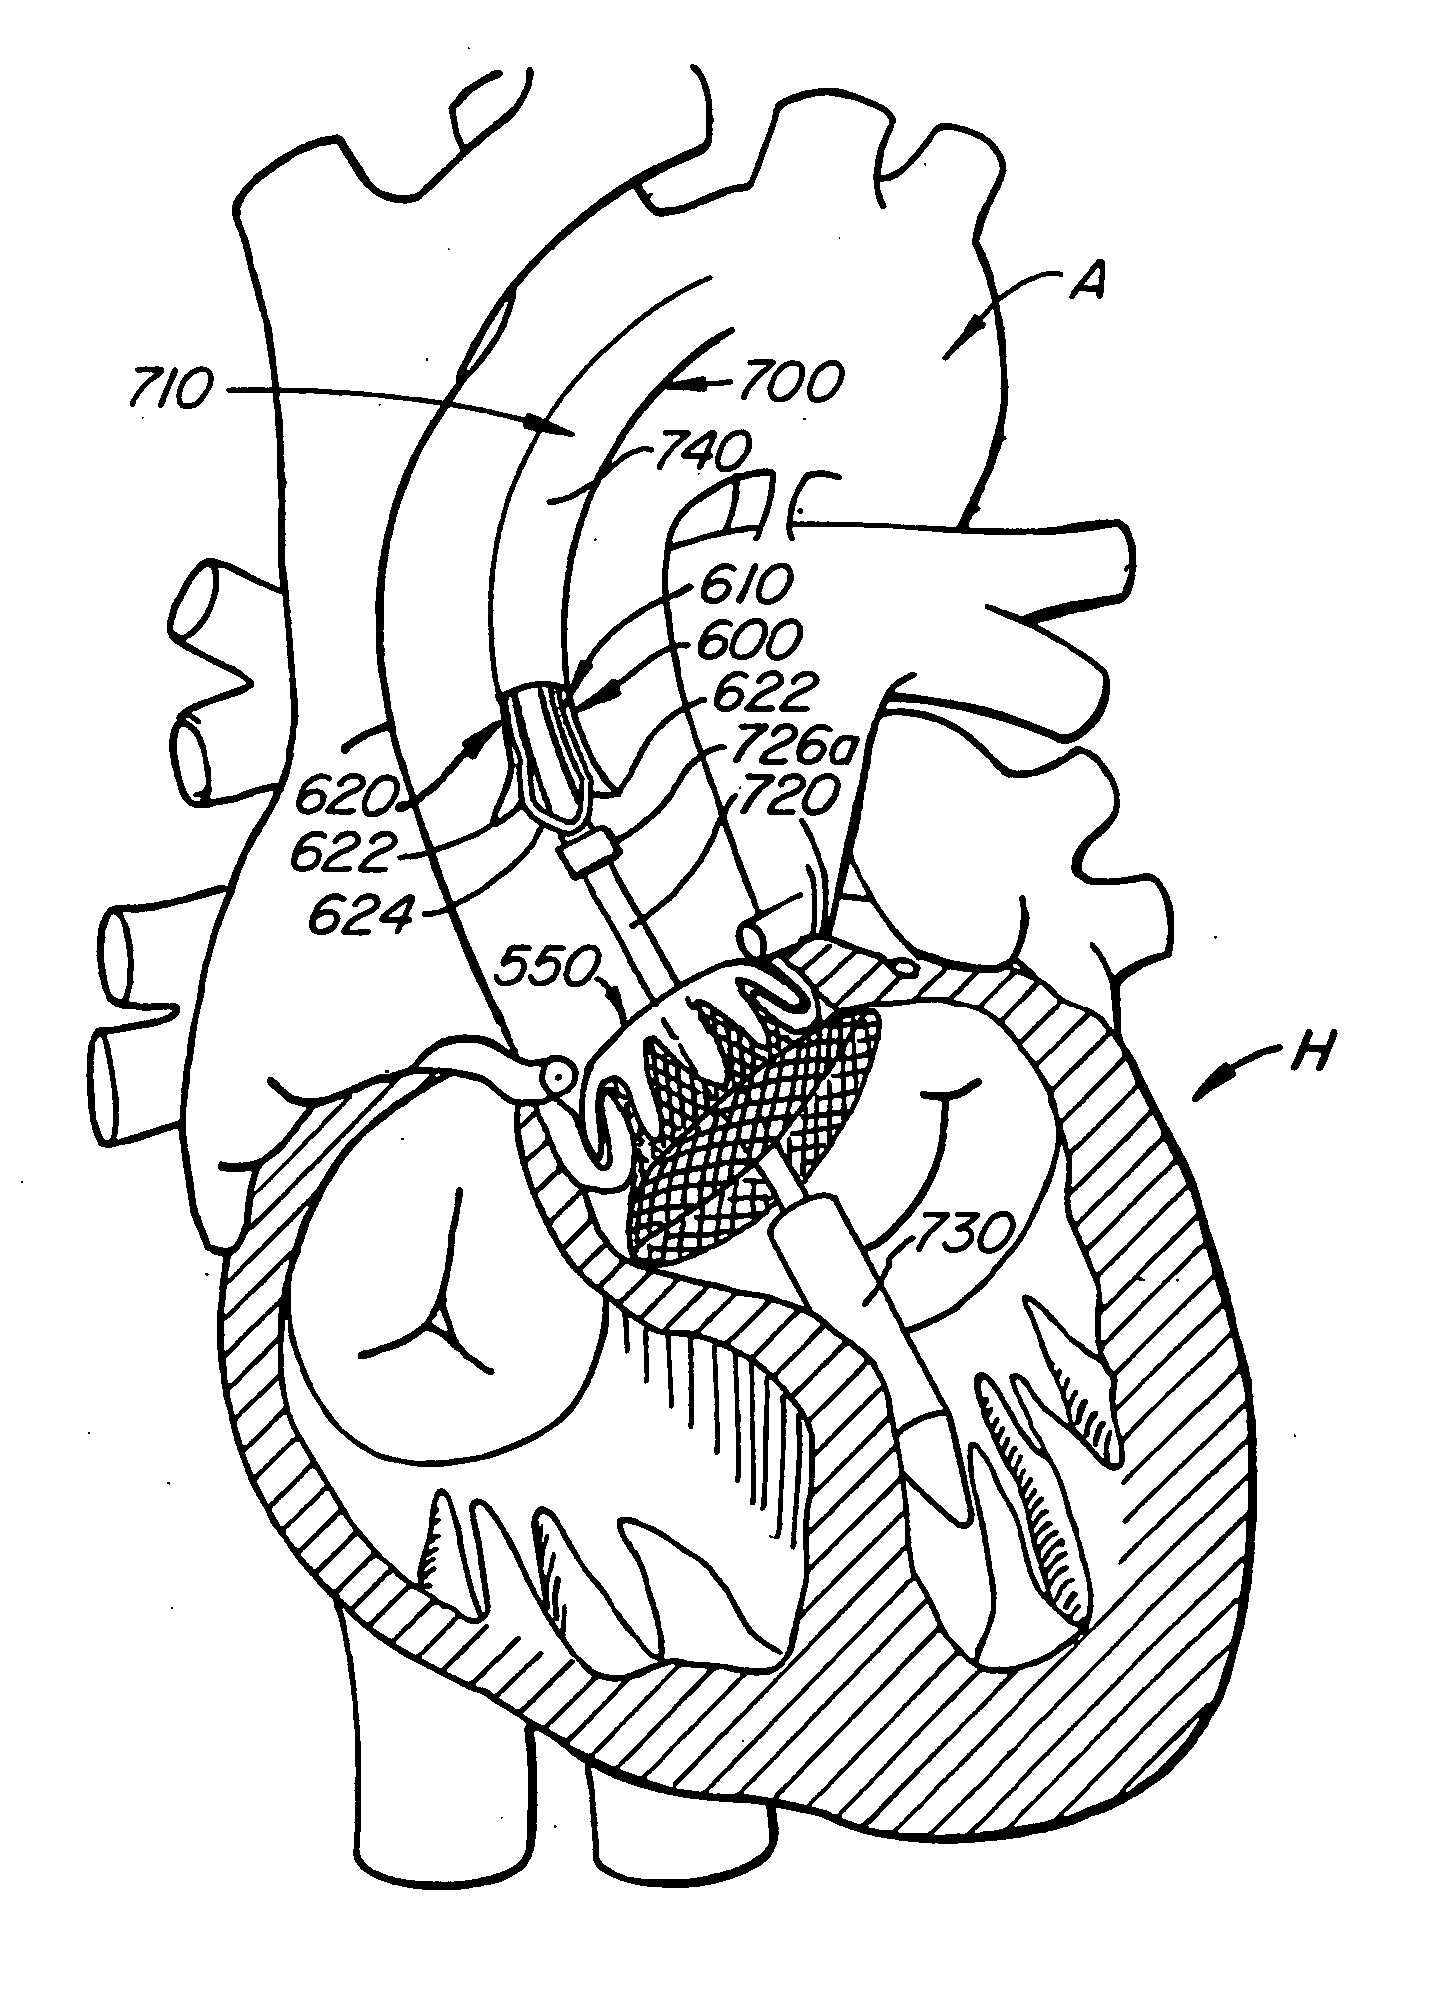 Retrievable heart valve anchor and method